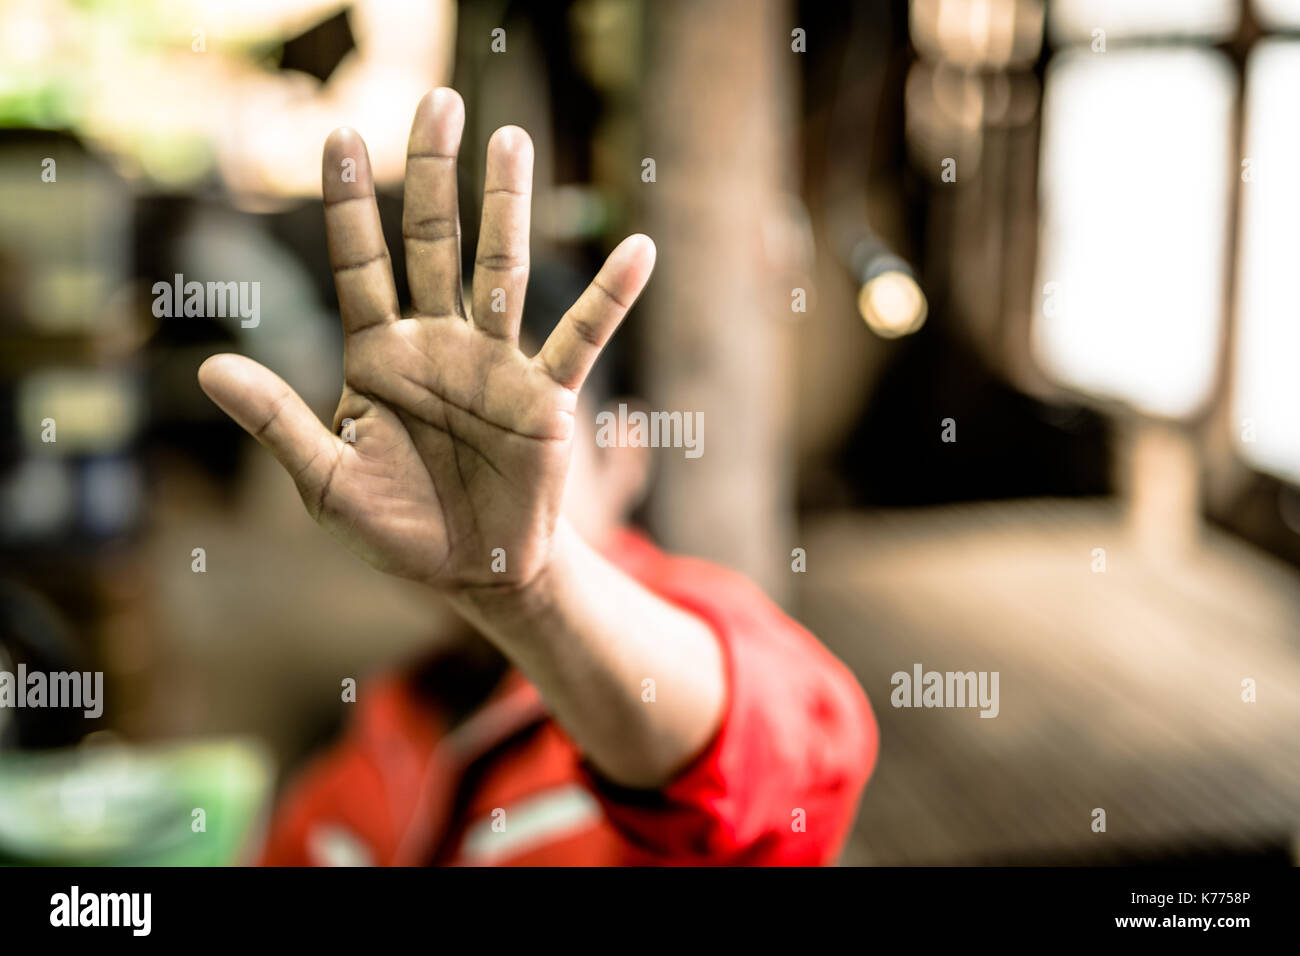 Stop missbrauchte junge Gewalt. Kind Bondage in Winkel Image Blur, Tag der Menschenrechte Konzept. Stockfoto